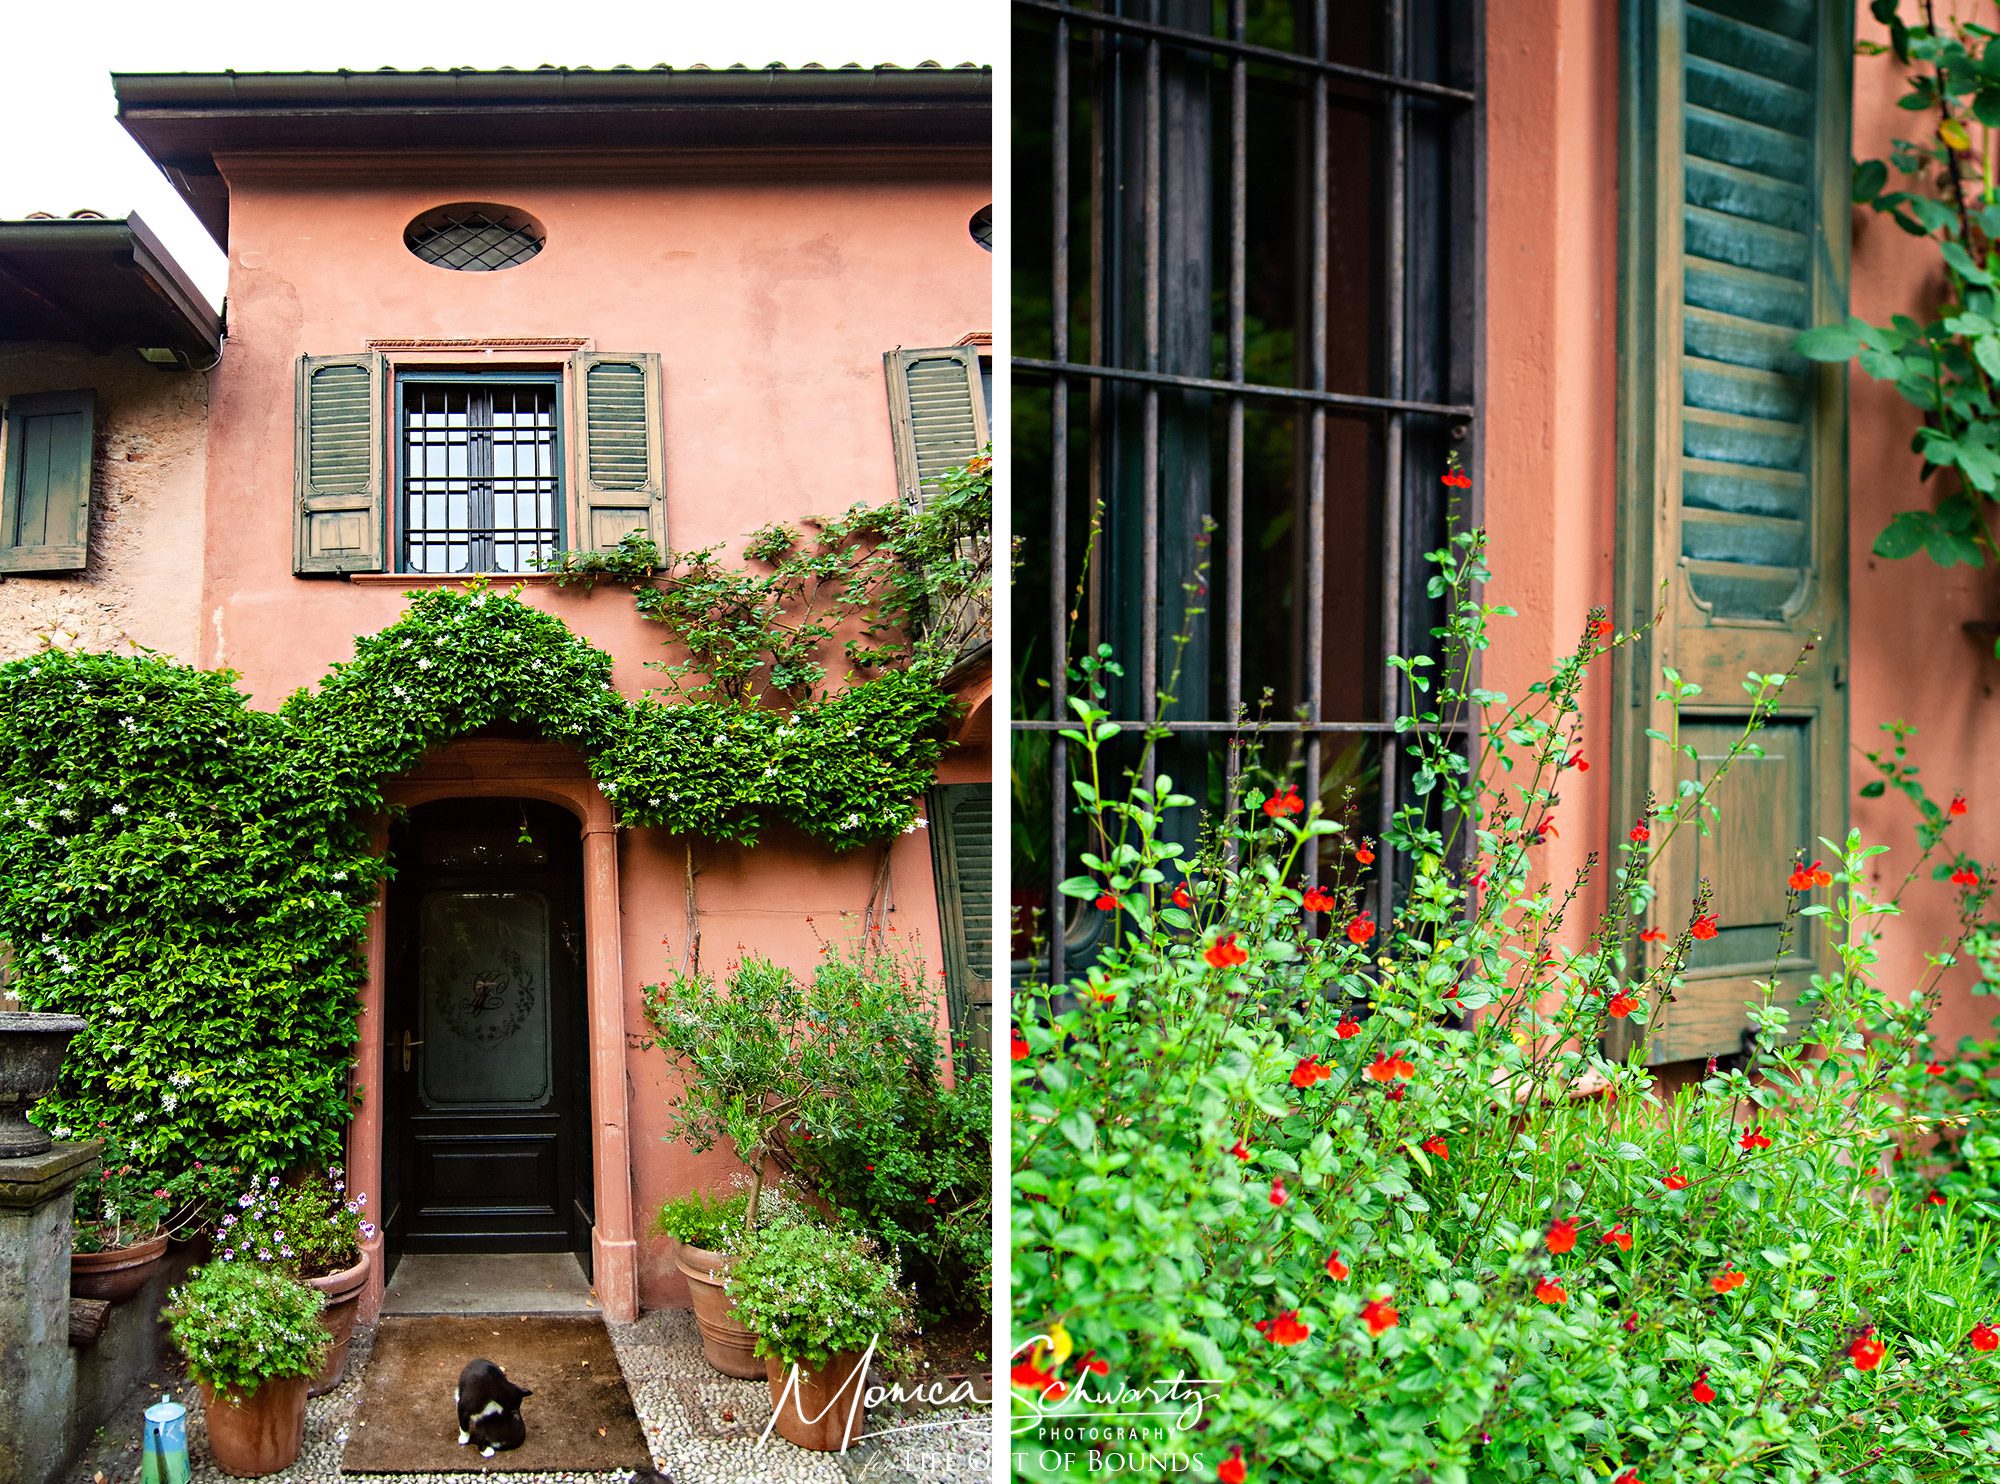 Adimas-beautiful-home-and-garden-in-Sesto-Calende-Italy